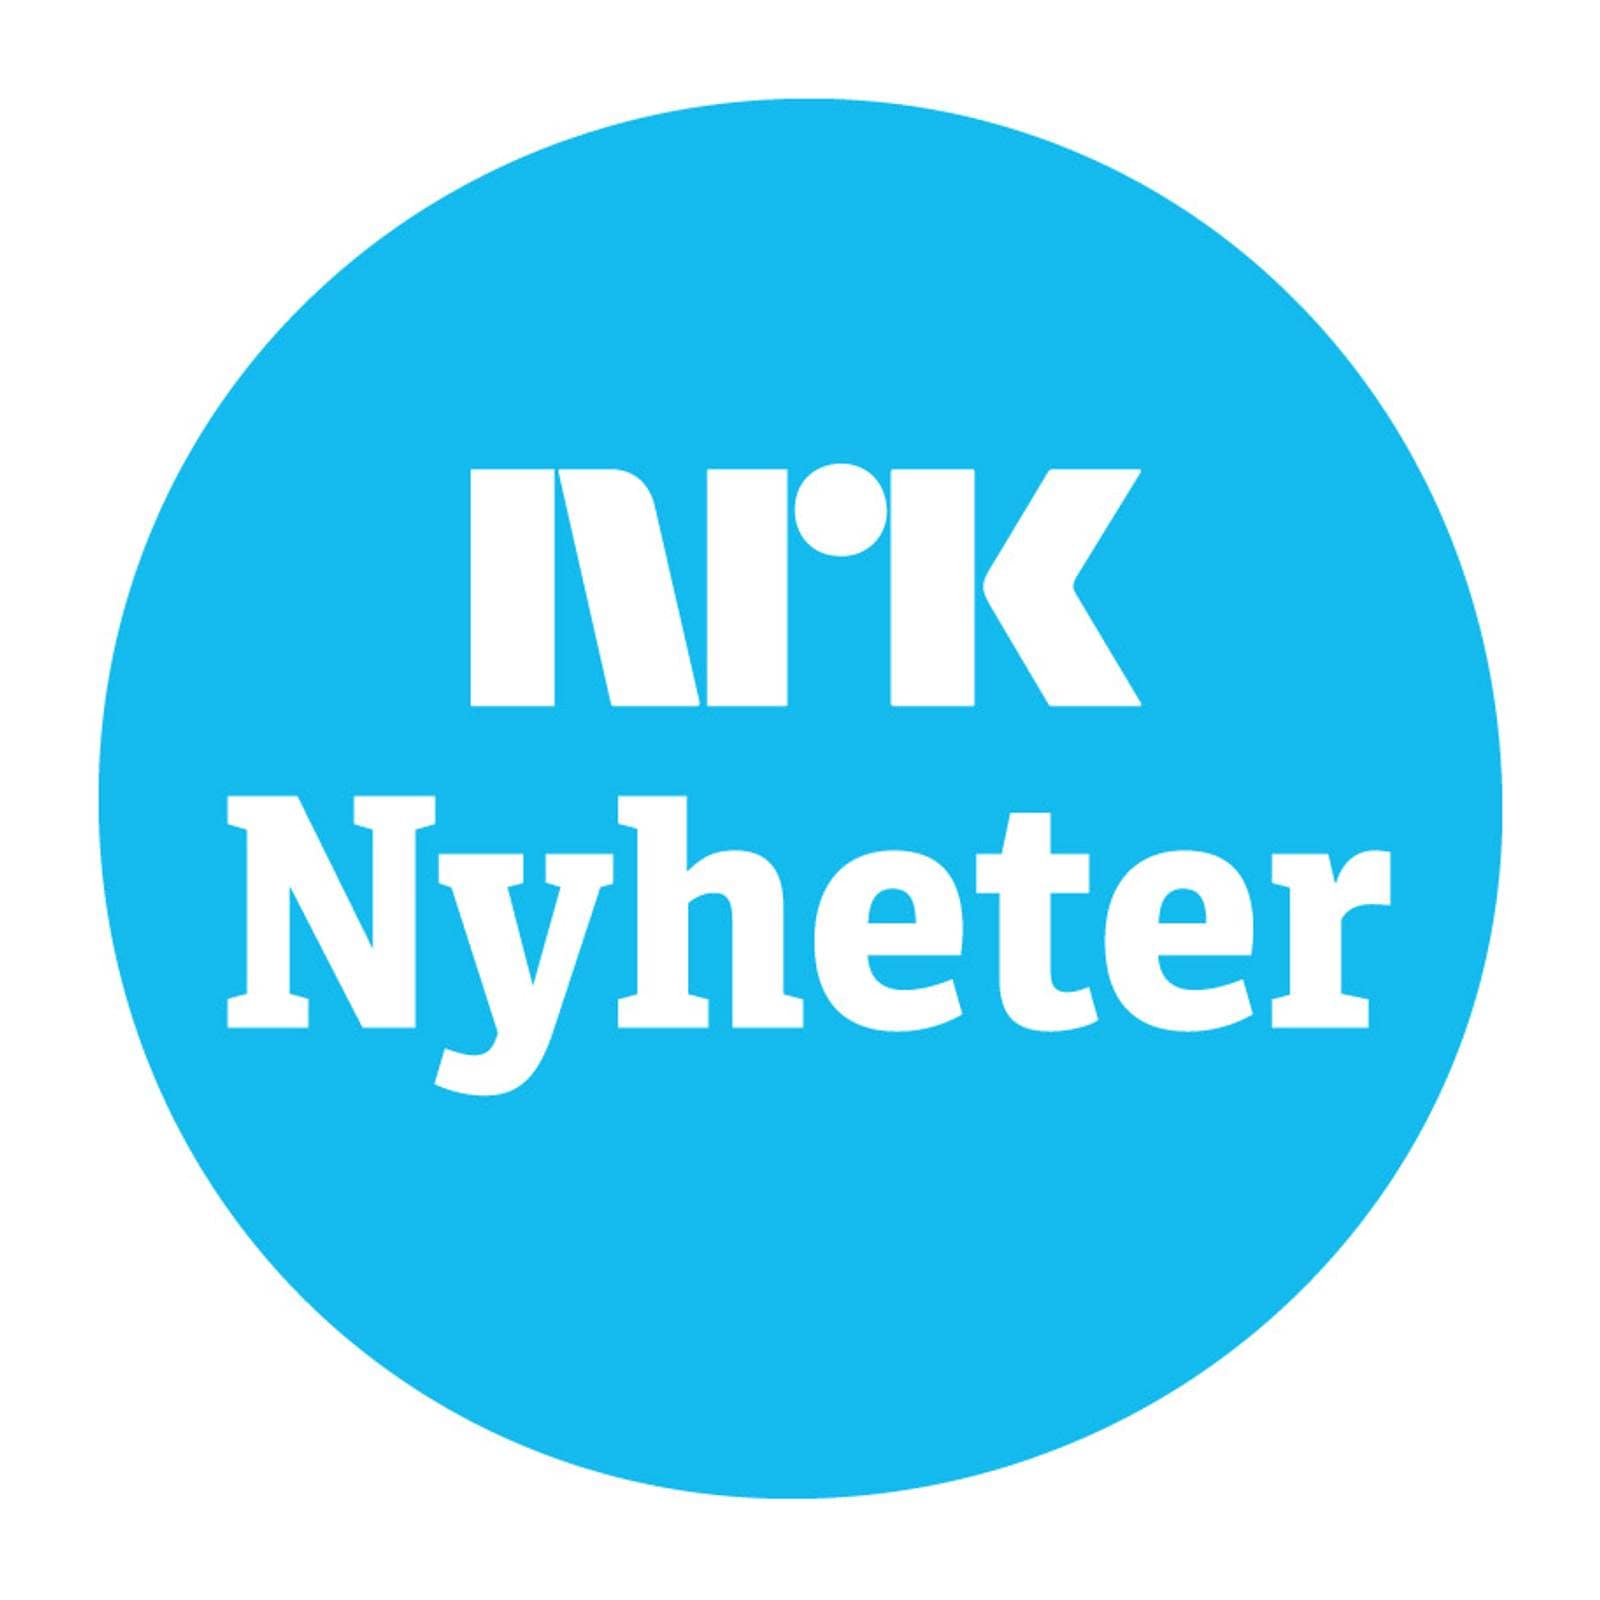 NRK Nyheter